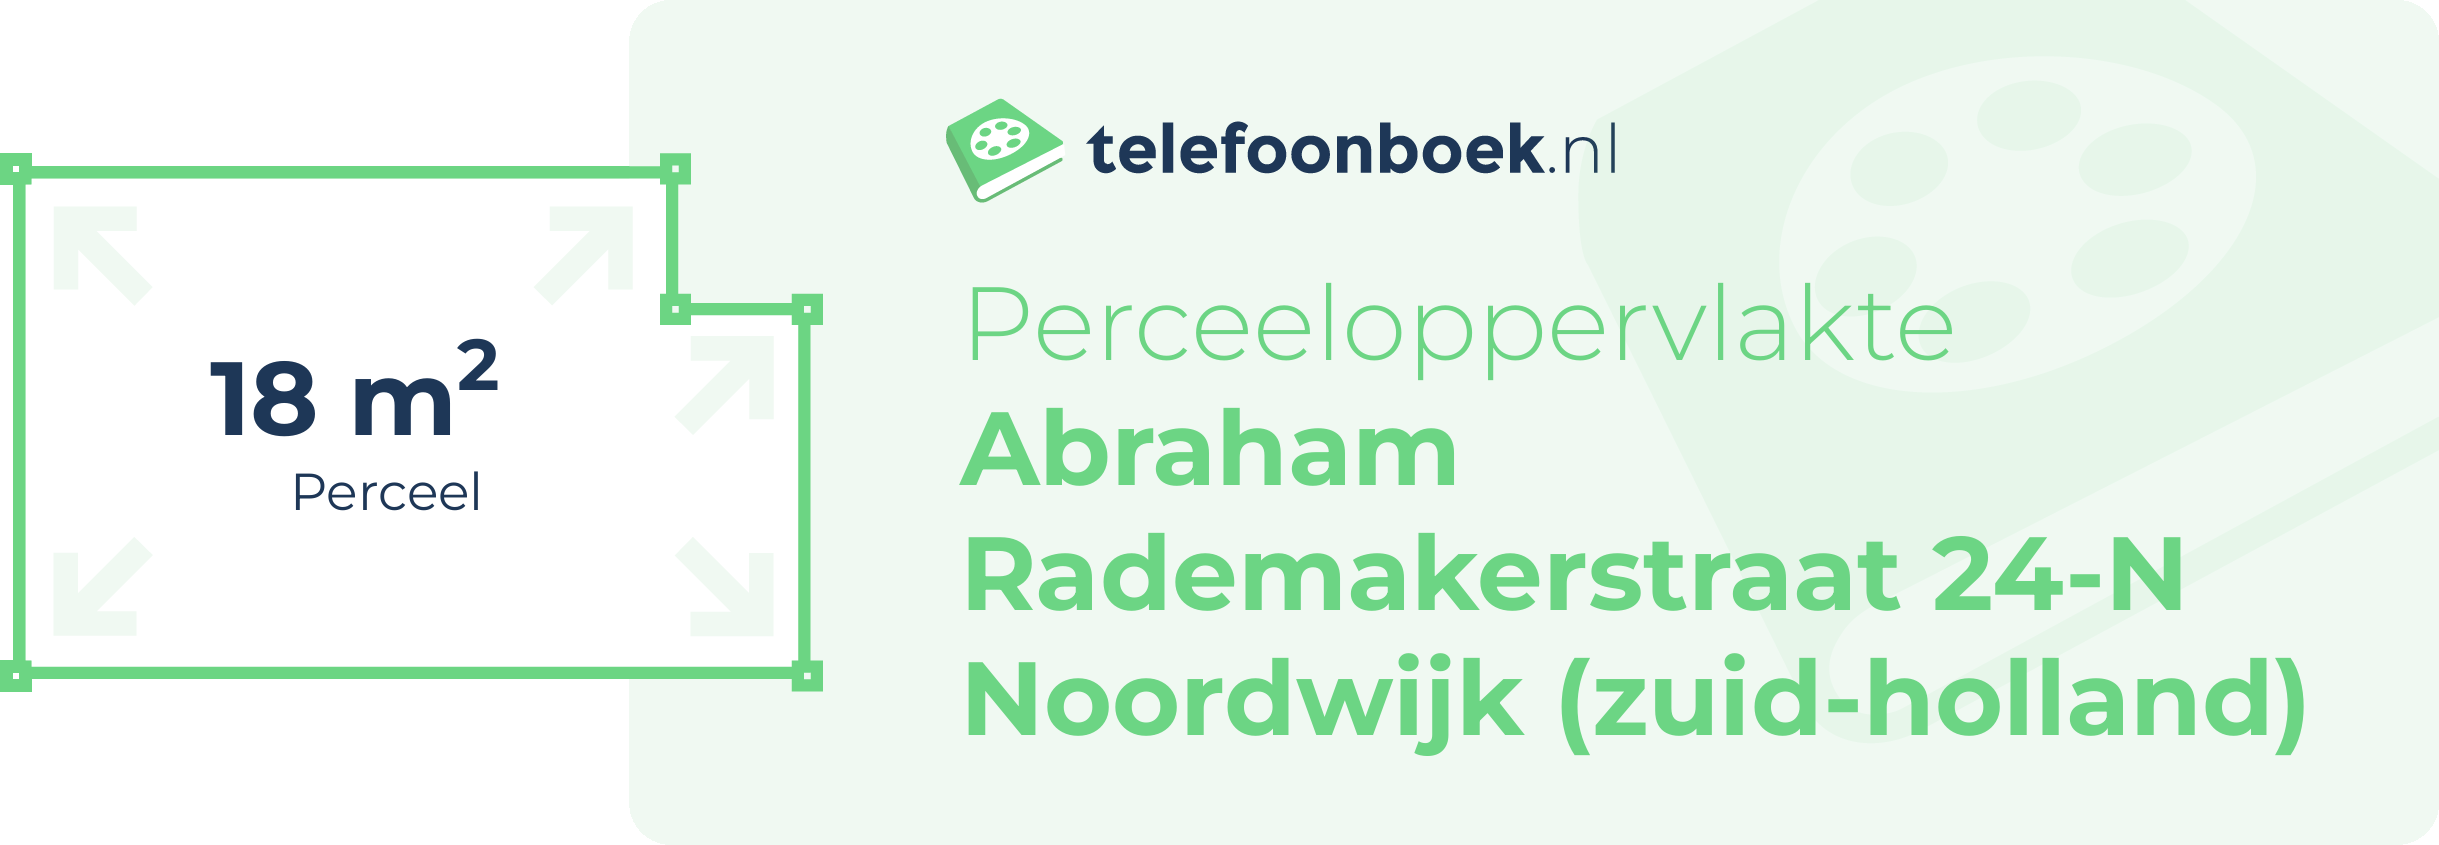 Perceeloppervlakte Abraham Rademakerstraat 24-N Noordwijk (Zuid-Holland)